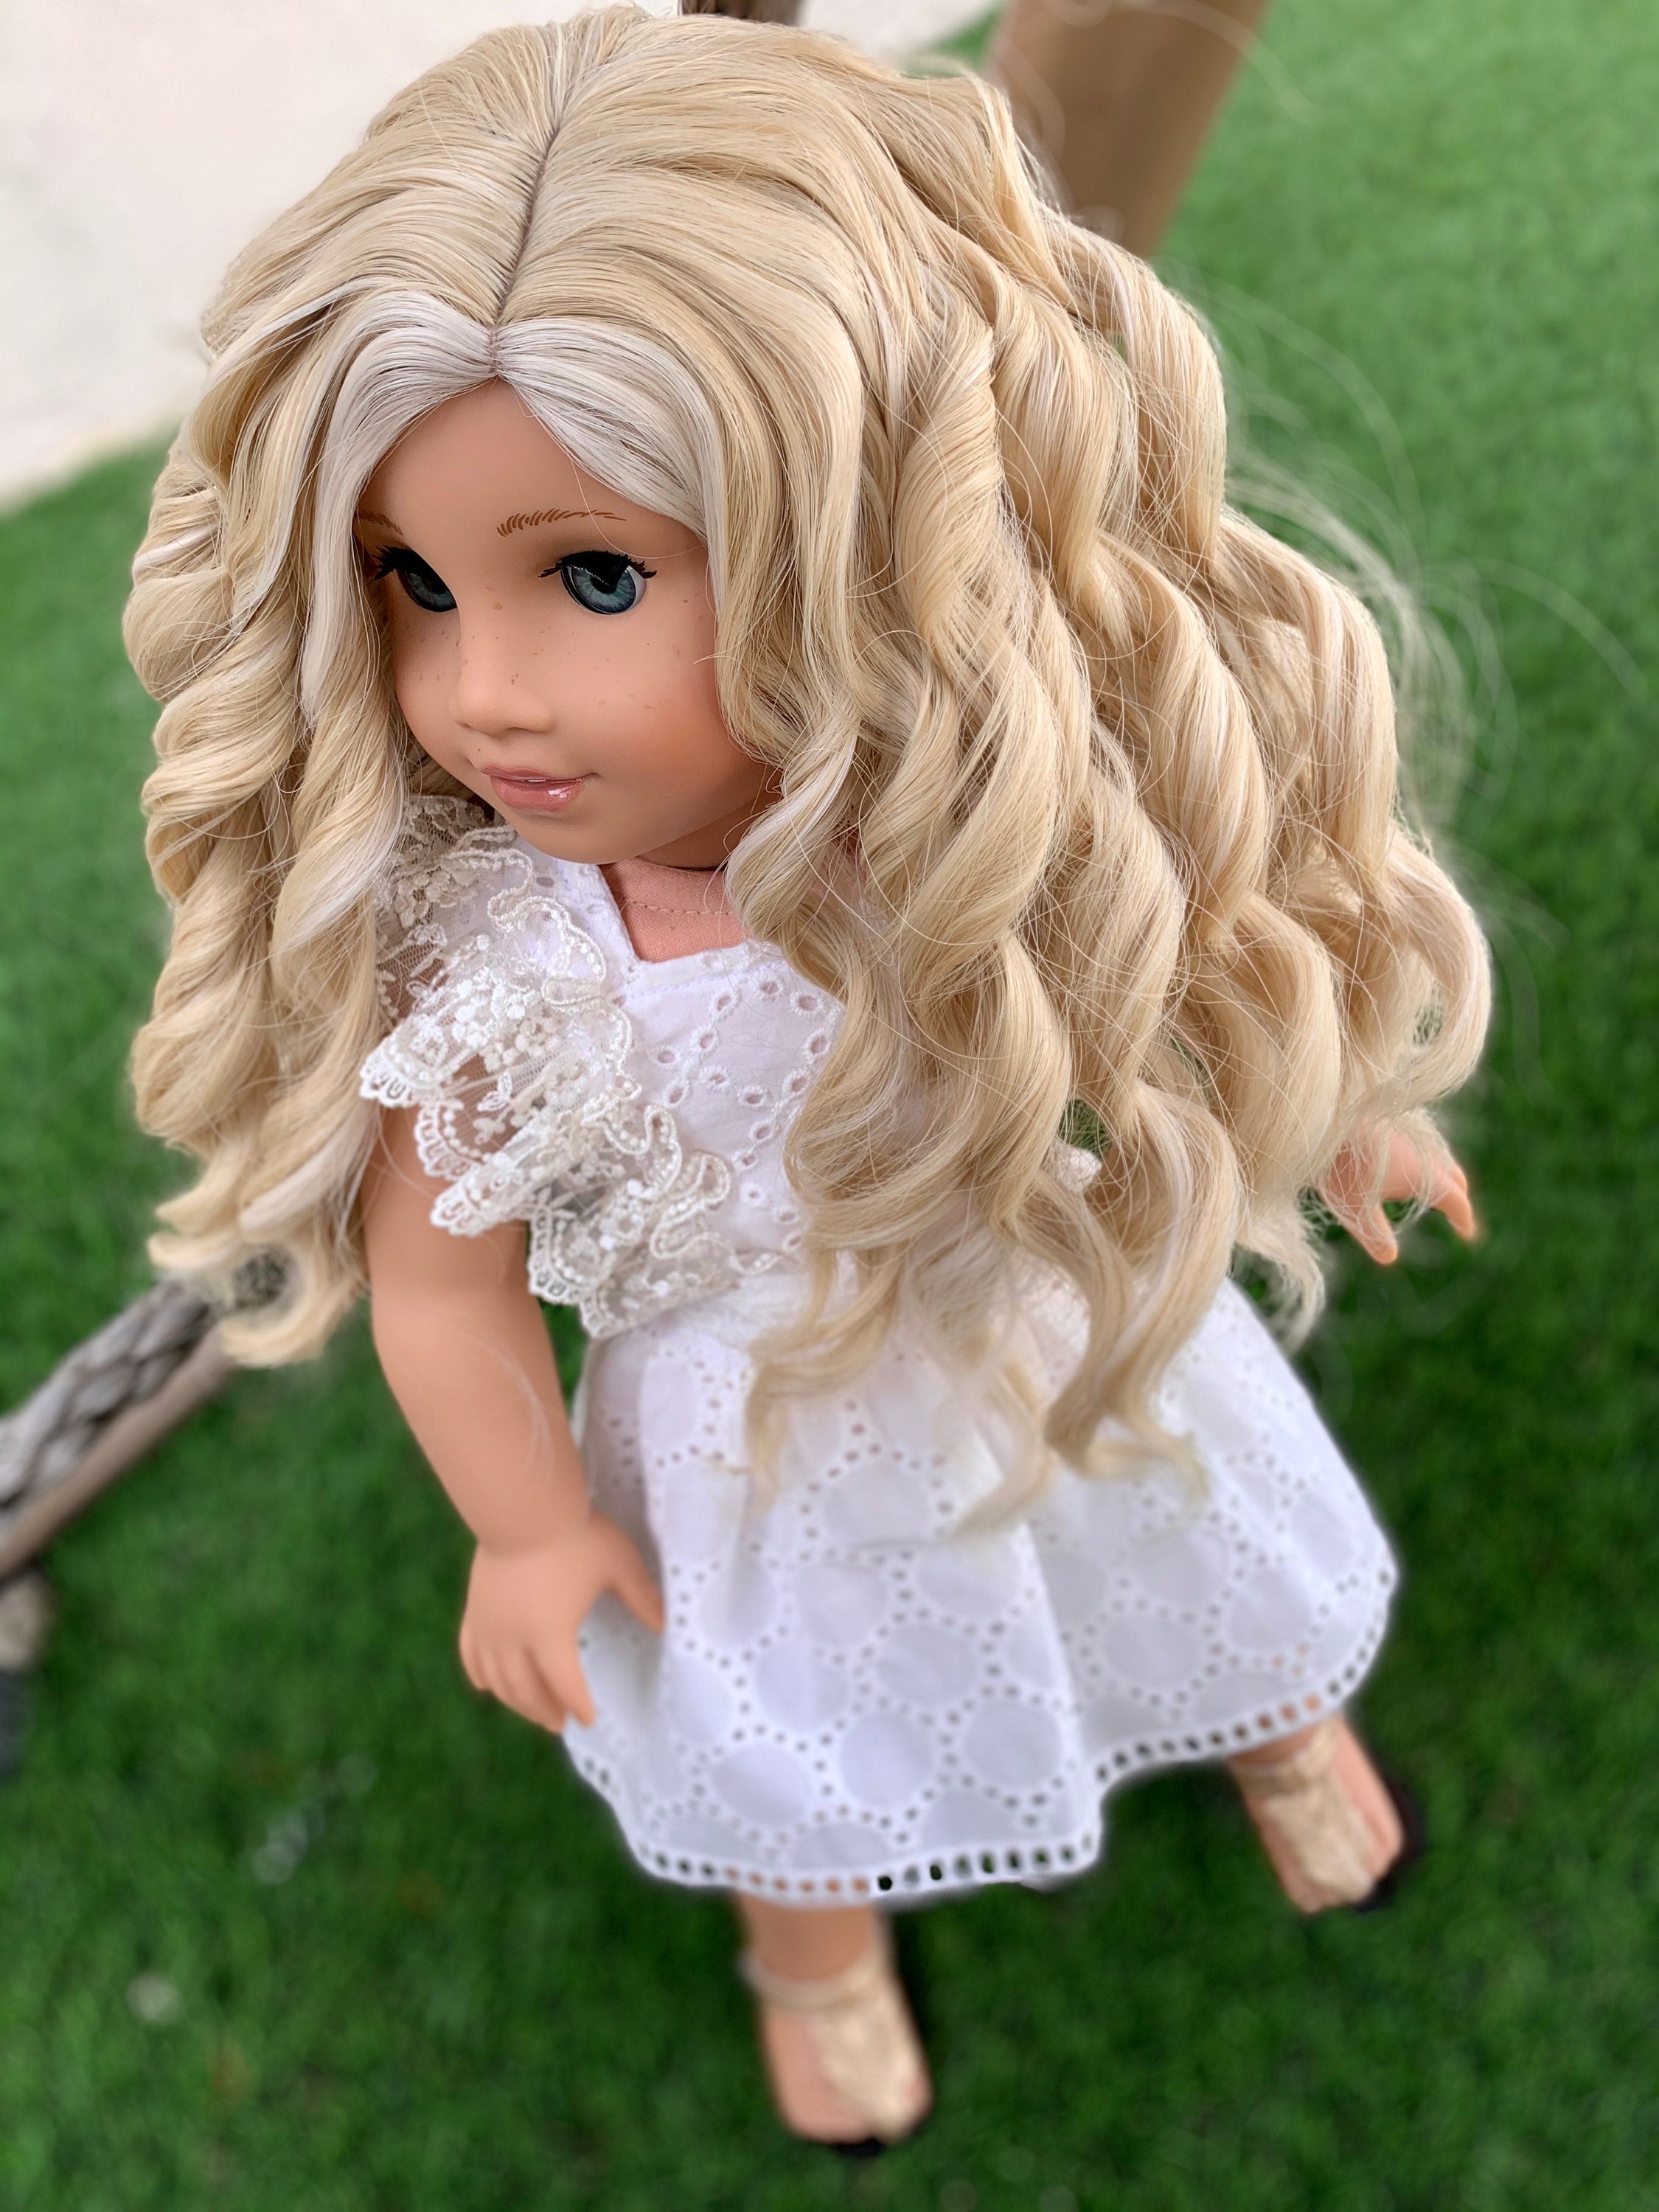 Custom doll wig for 18" American Girl Dolls - Heat Safe- Tangle Resistant - fits 10-11" head size of 18" dolls OG Blythe BJD Gotz Blonde